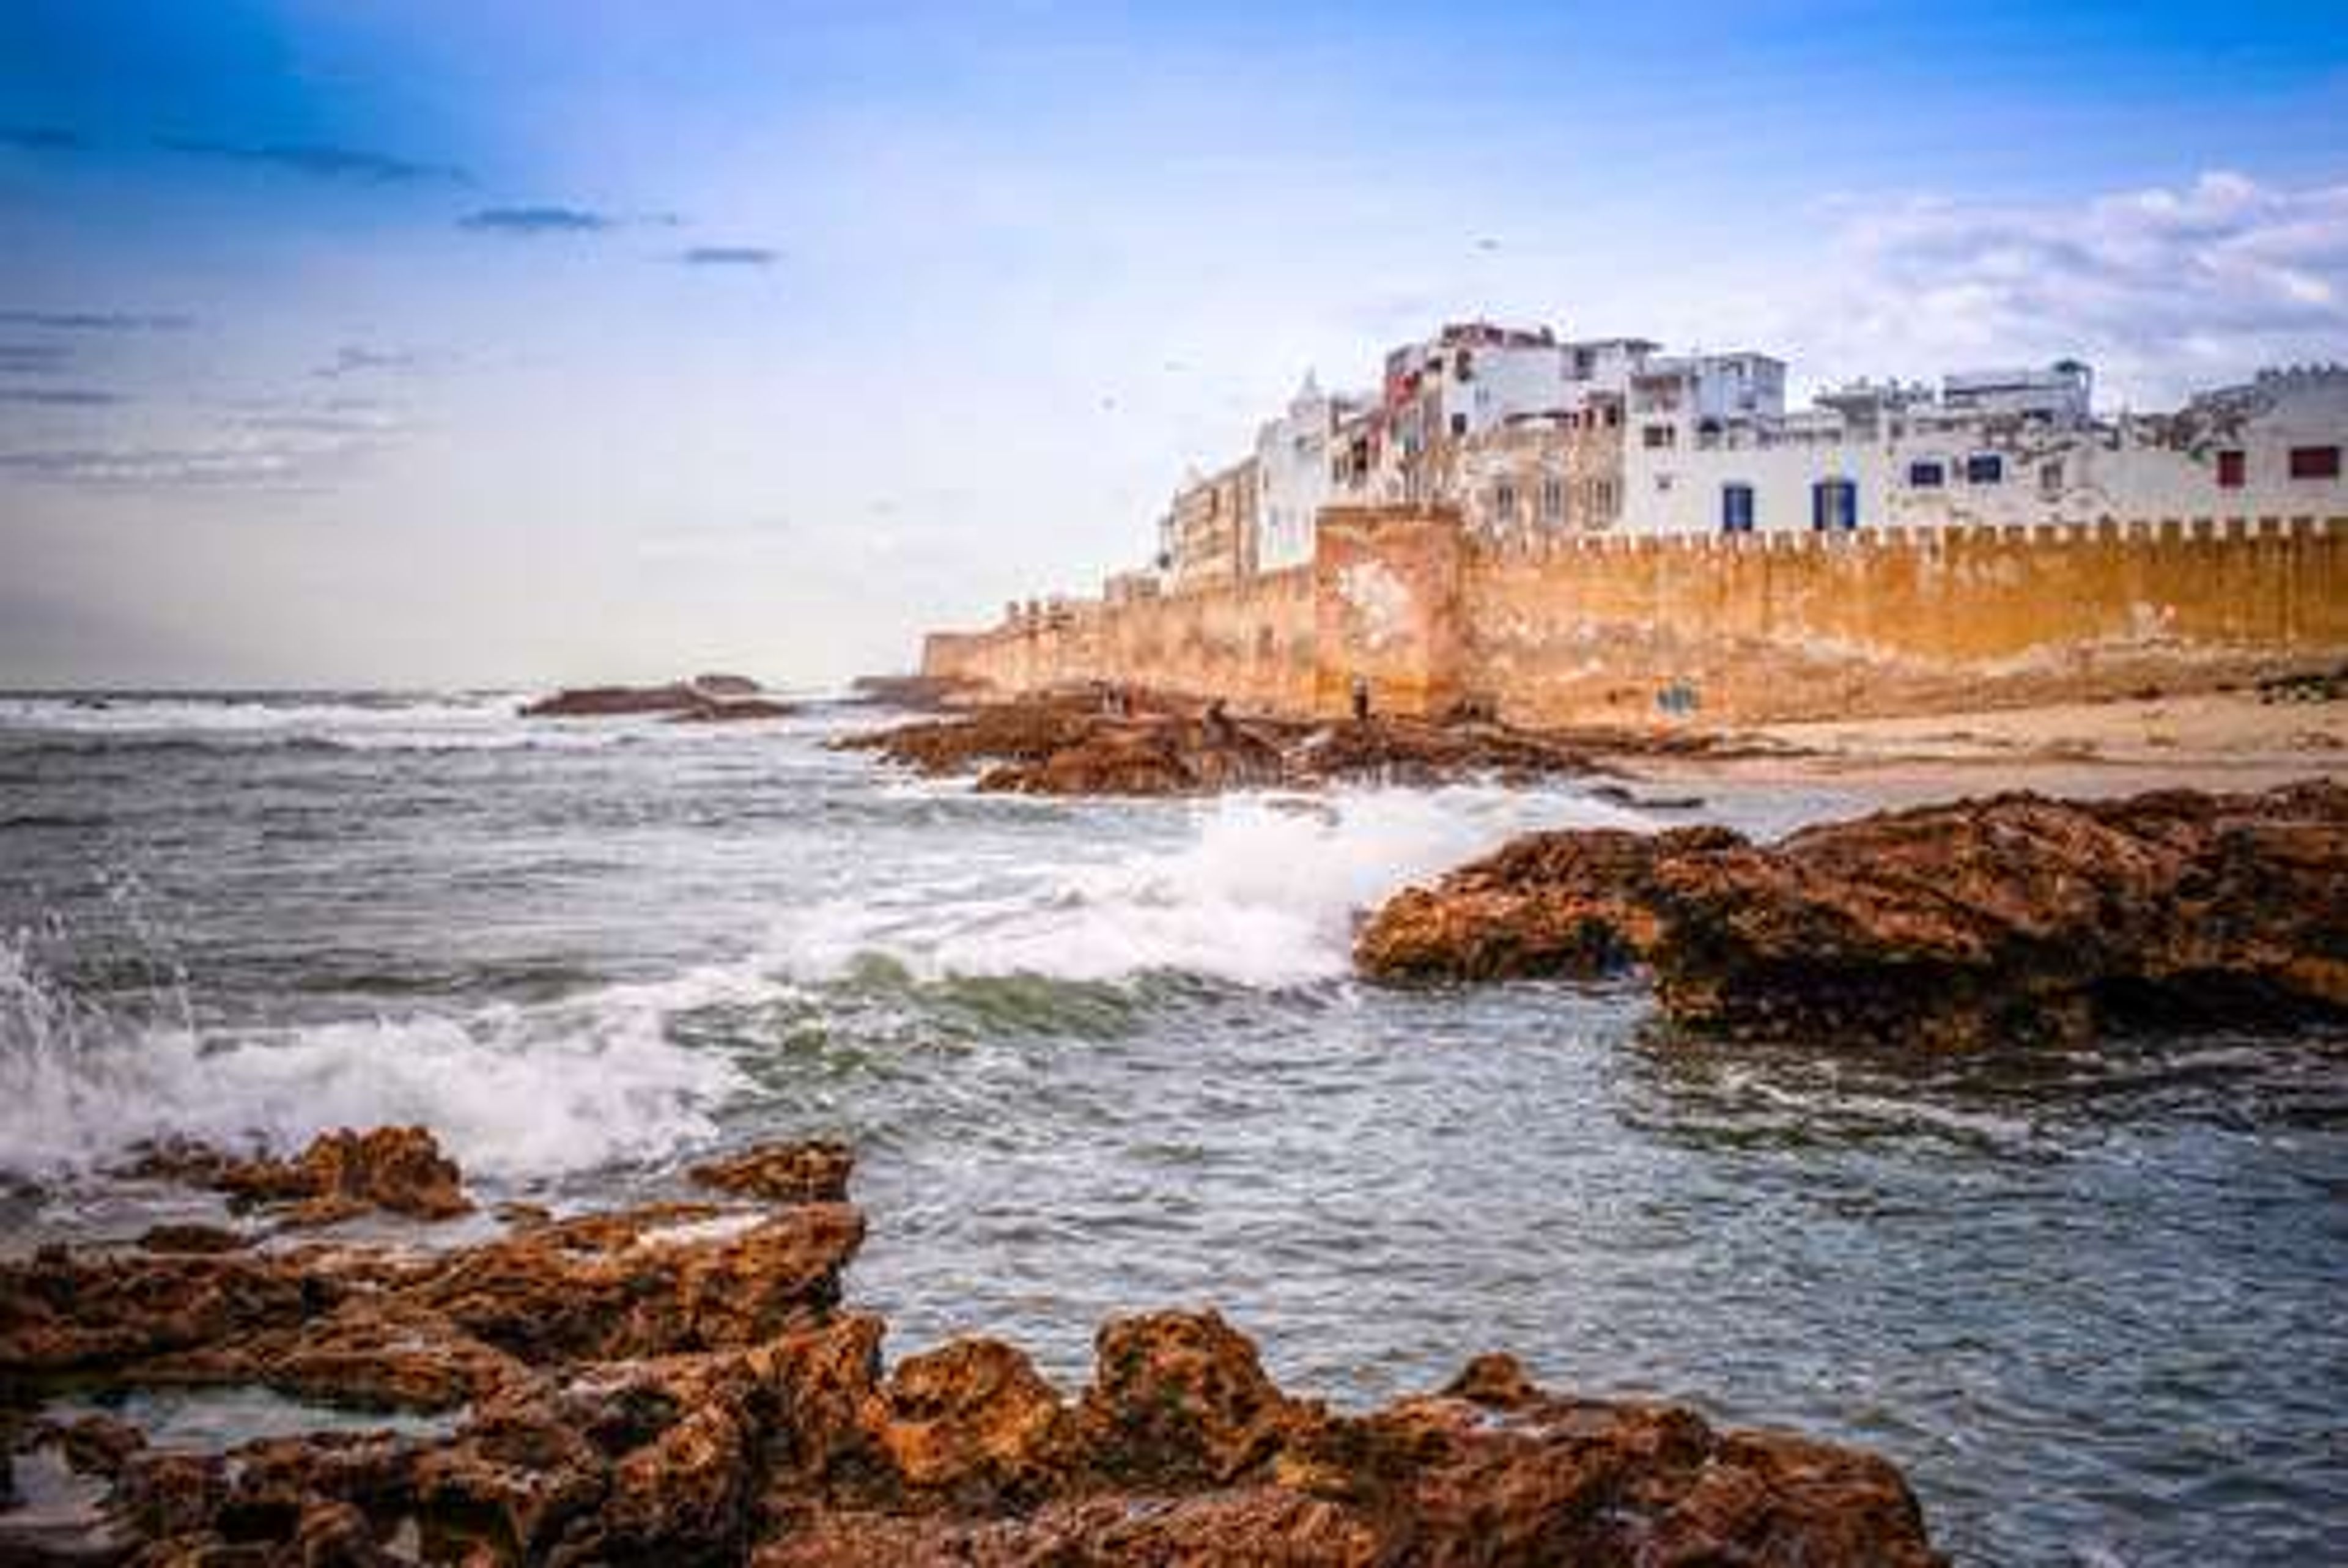 Marokko zee met stad